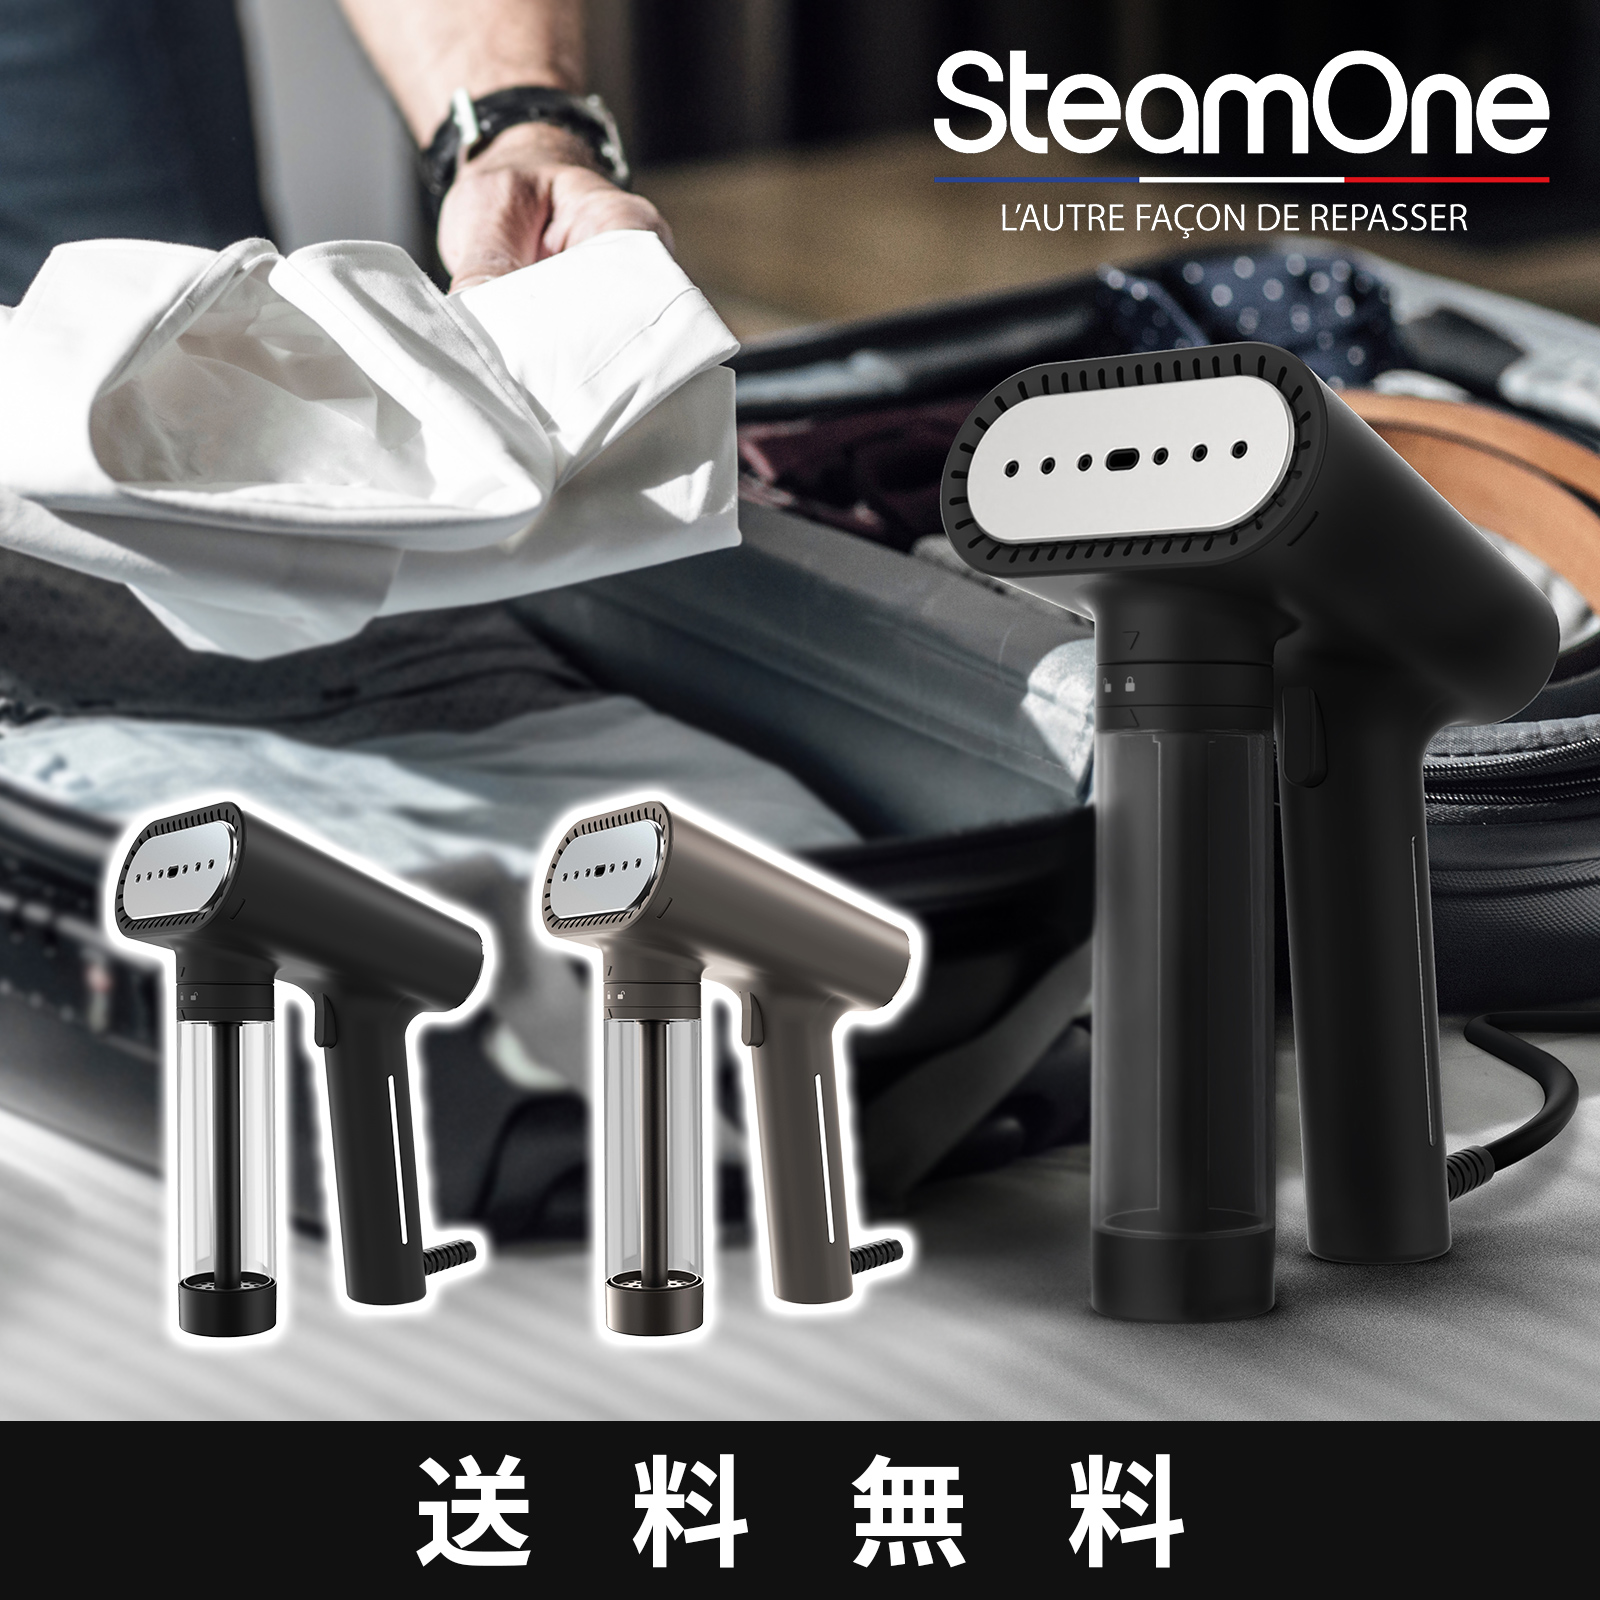 SteamOne 衣類スチーマー S-Nomad NS1750 ブラック チタニウム 軽量/パワフル18gスチーム/30秒起動/容量150ml /ペットボトルで連続使用可能 